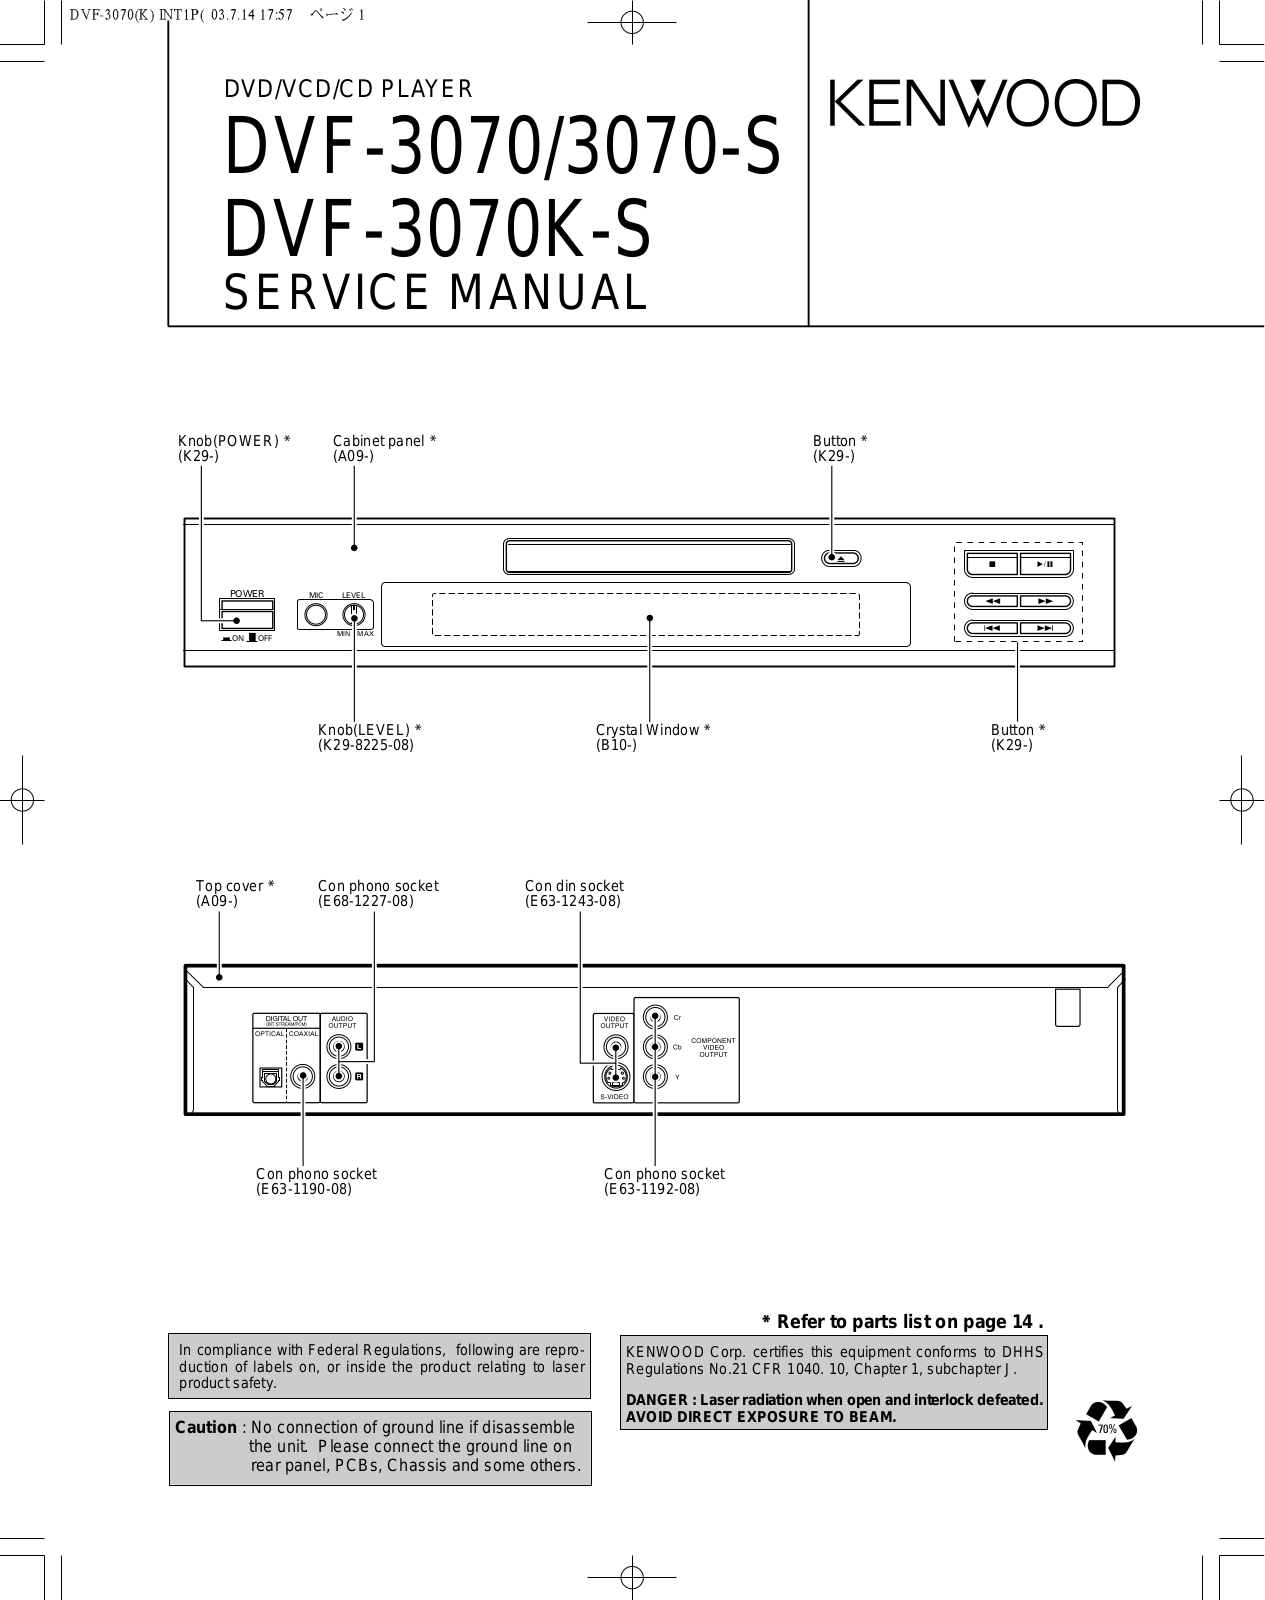 Kenwood DVF-3070-S, DVF-3070-KS, DVF-3070 Service Manual